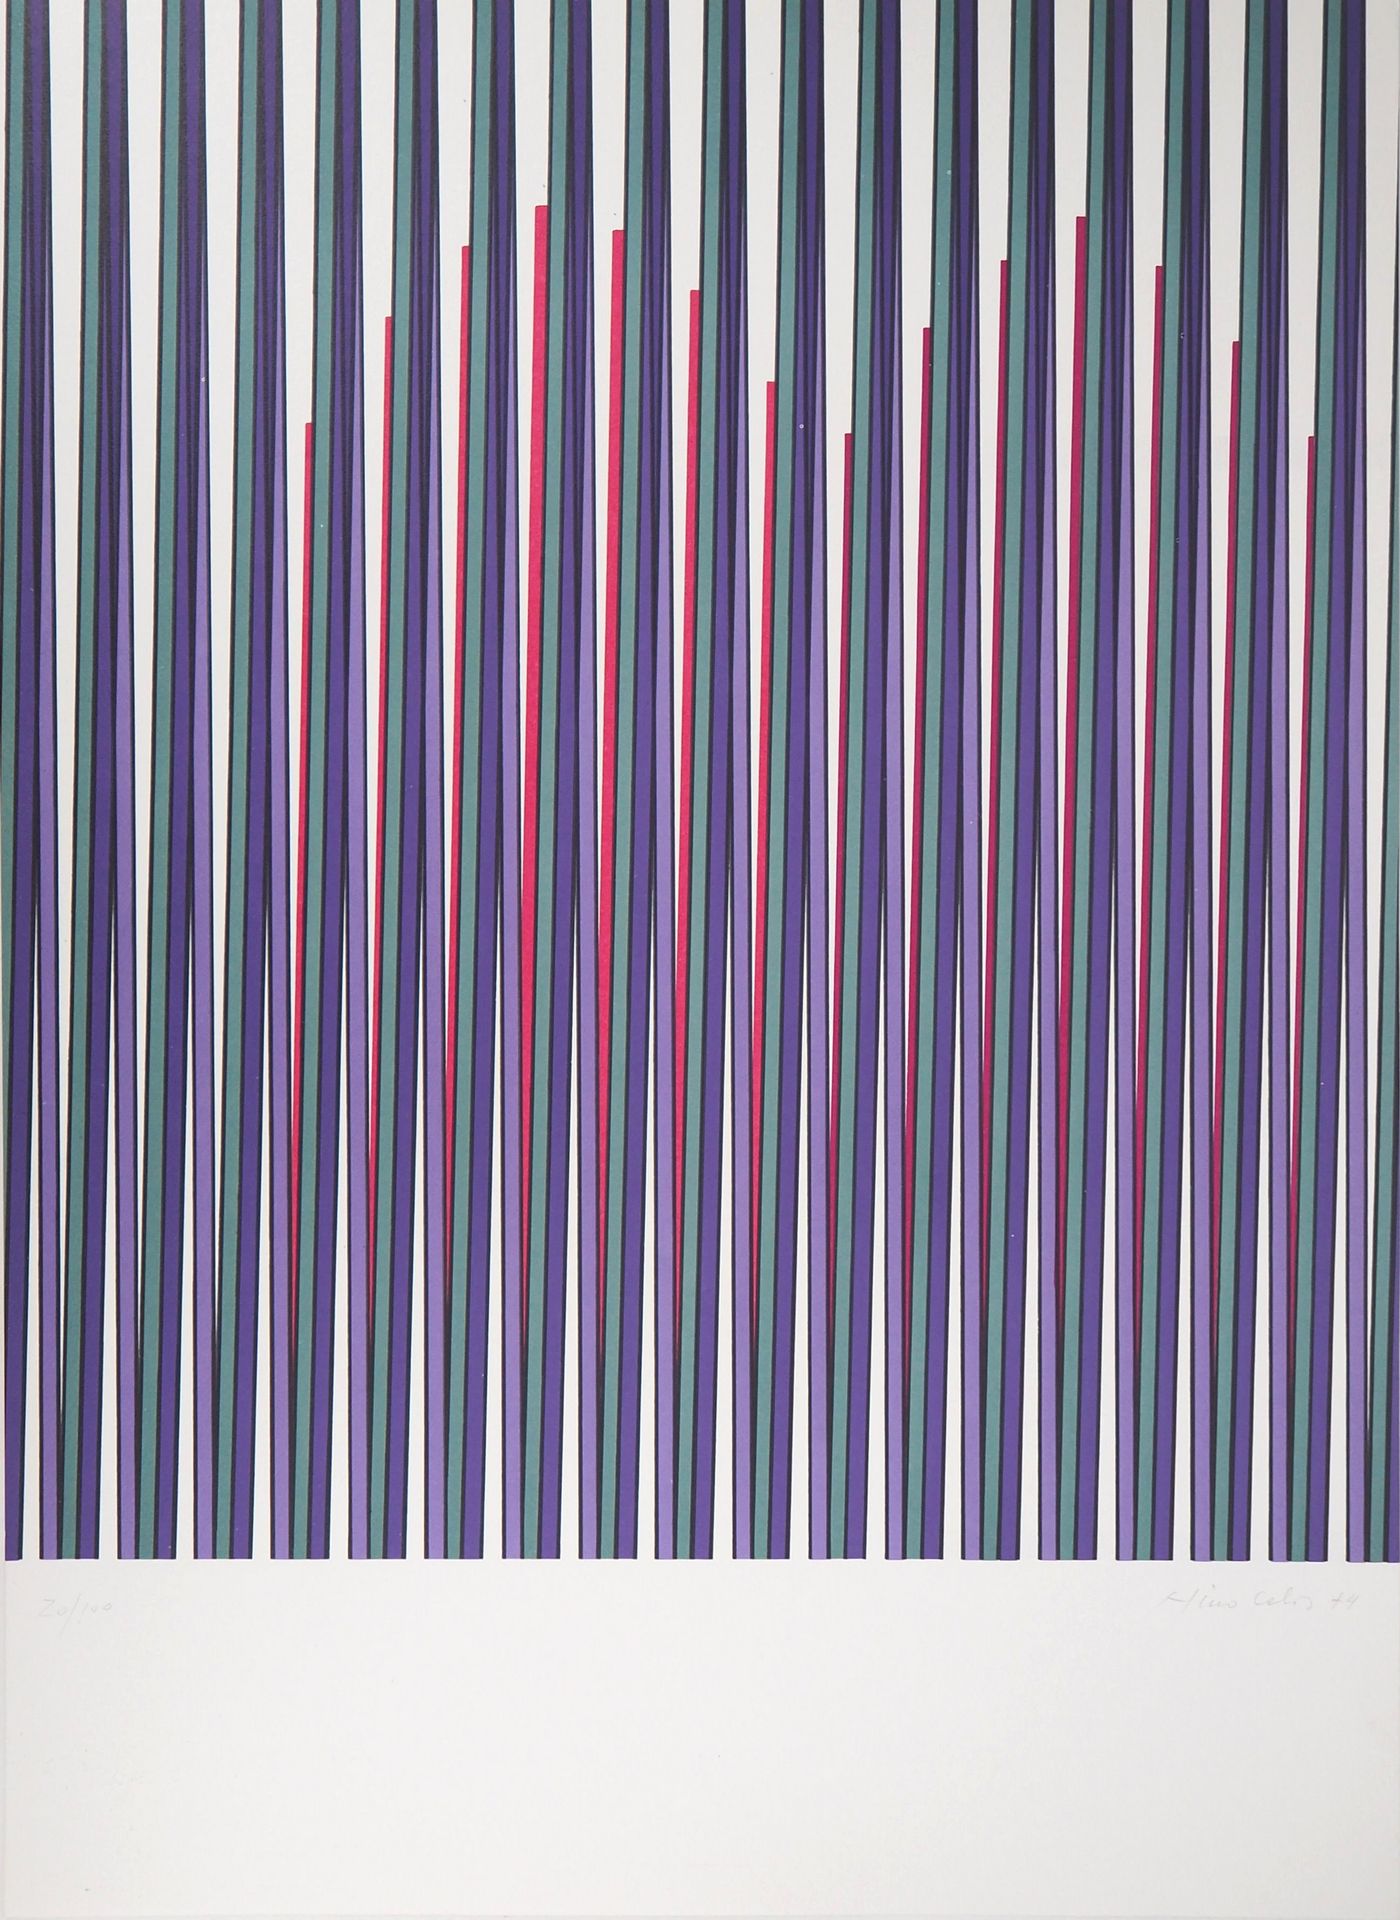 Nino CALOS 尼诺-卡洛斯

紫色的动力学成分，1974

原始石版画

用铅笔签名并注明日期

牛皮纸上74.5 x 54.5厘米

编号为20/10&hellip;